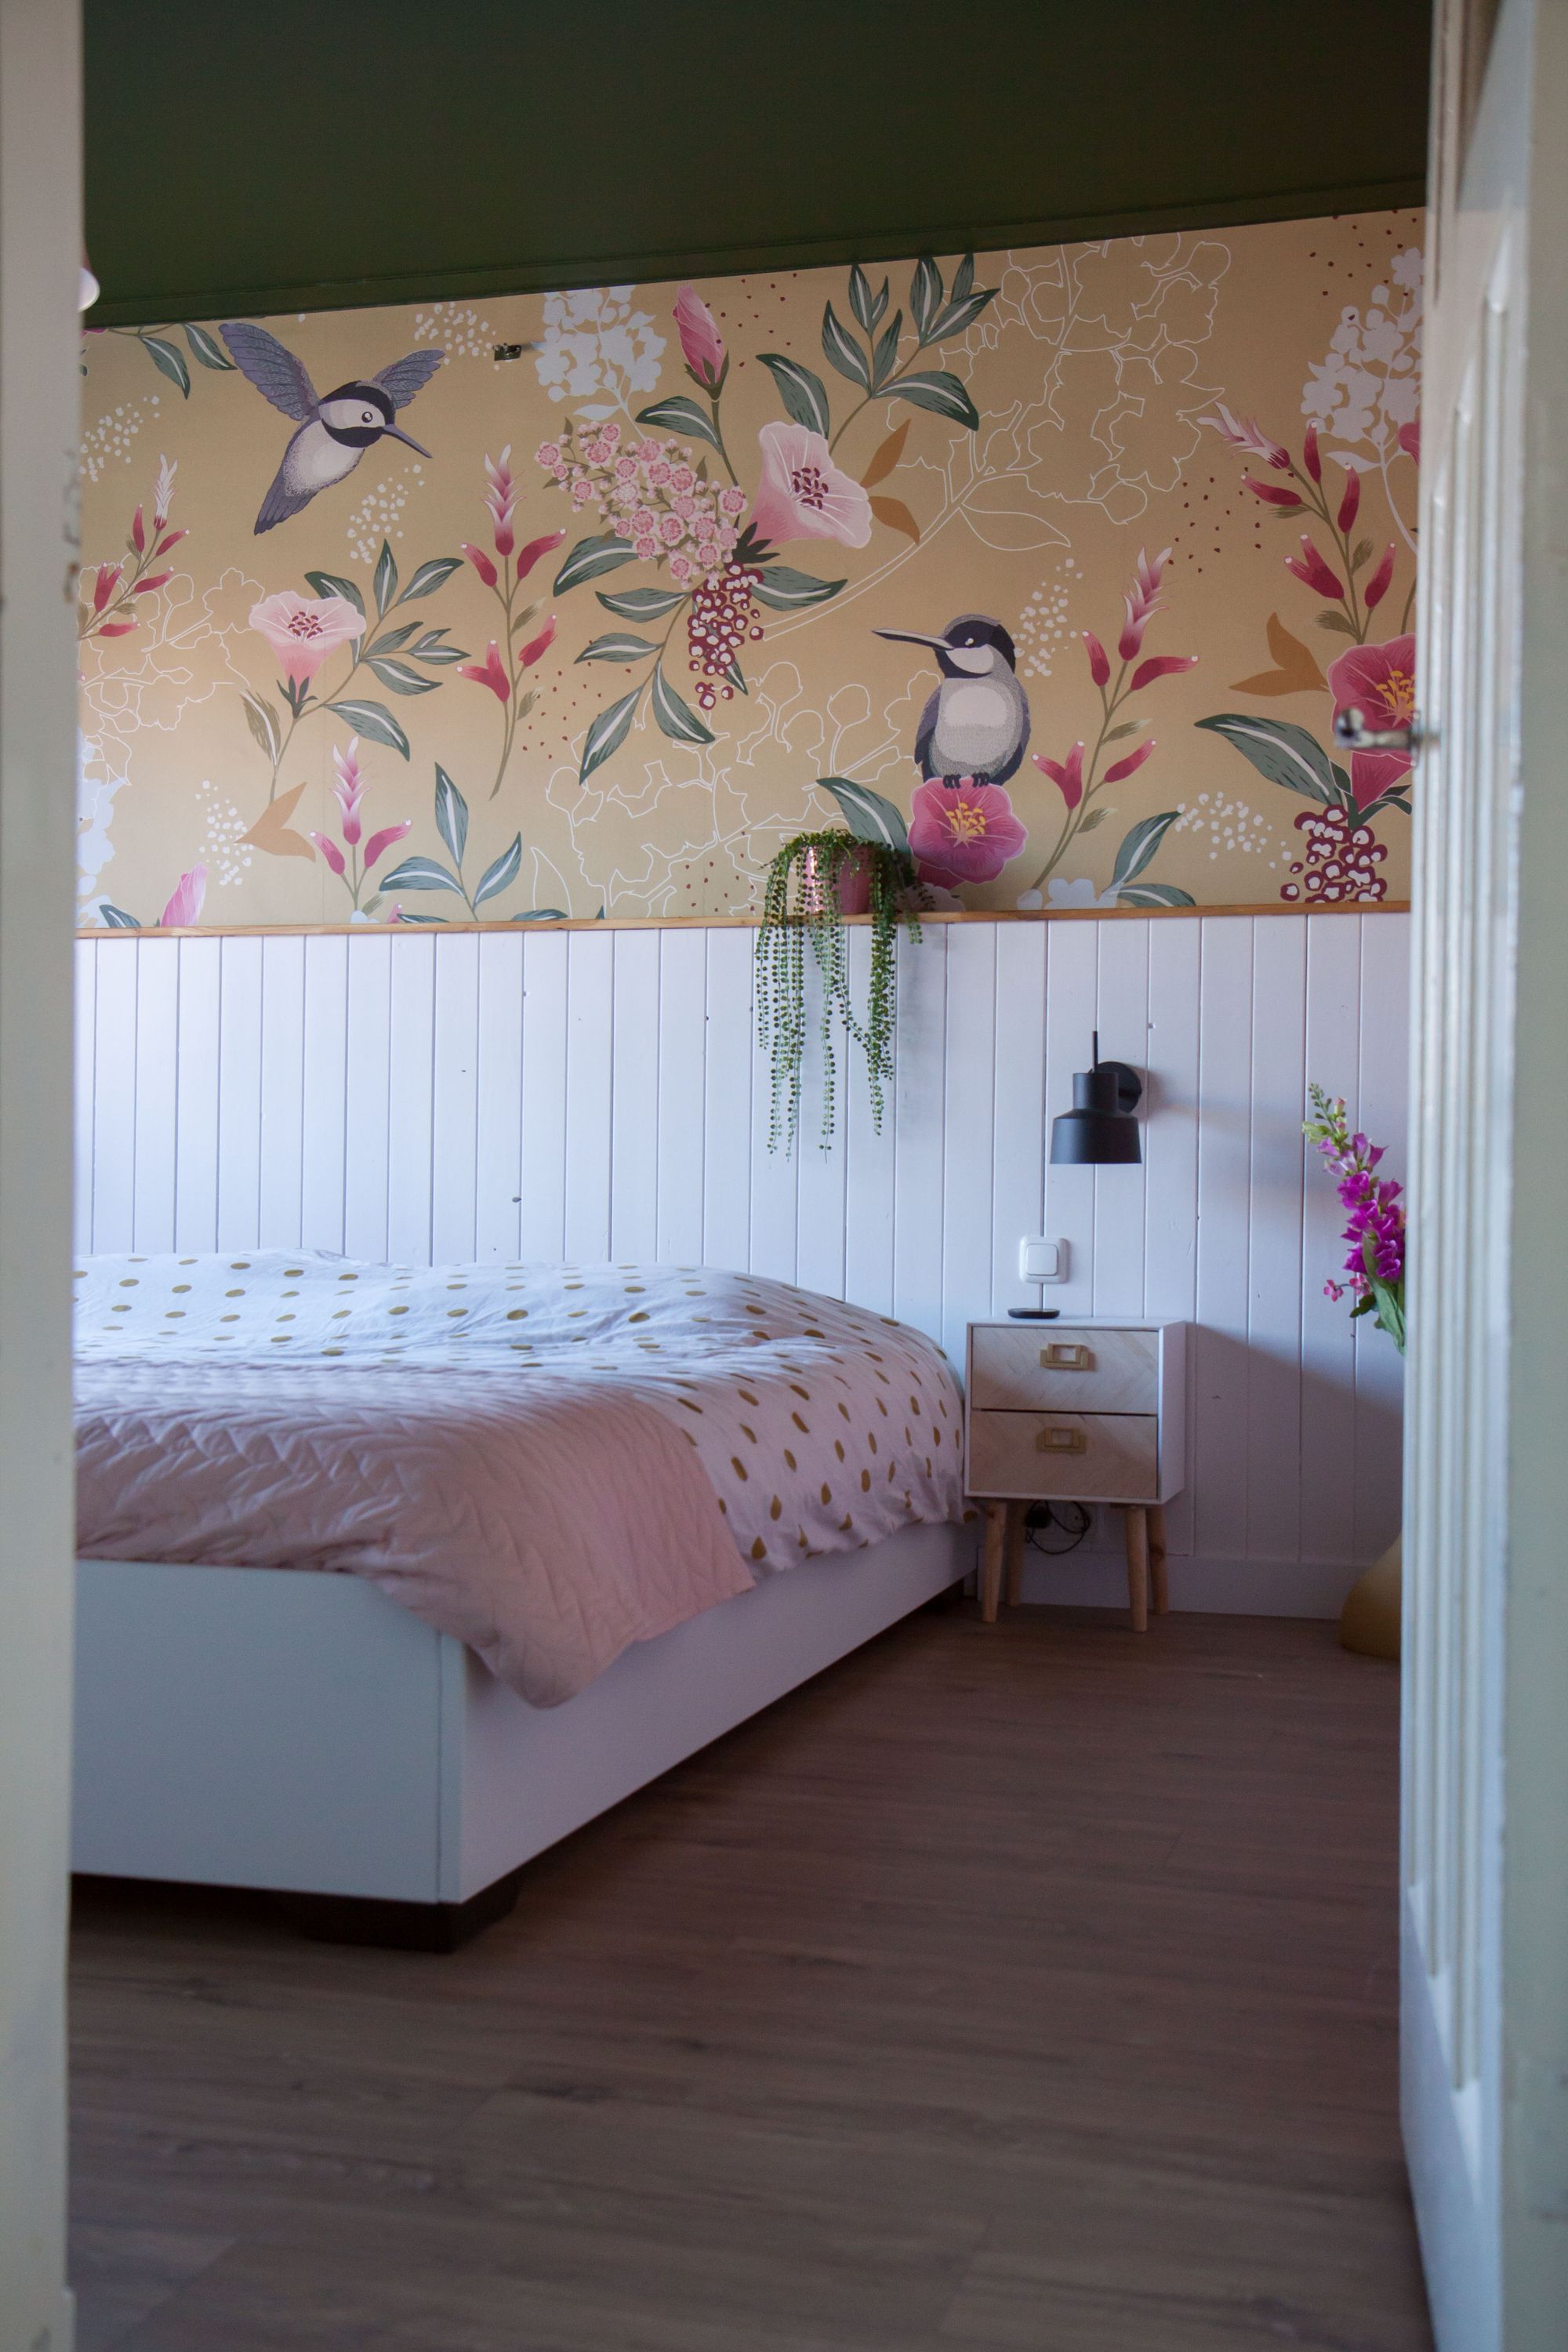 Slaapkamer, bed, bloemen behang met vogels.